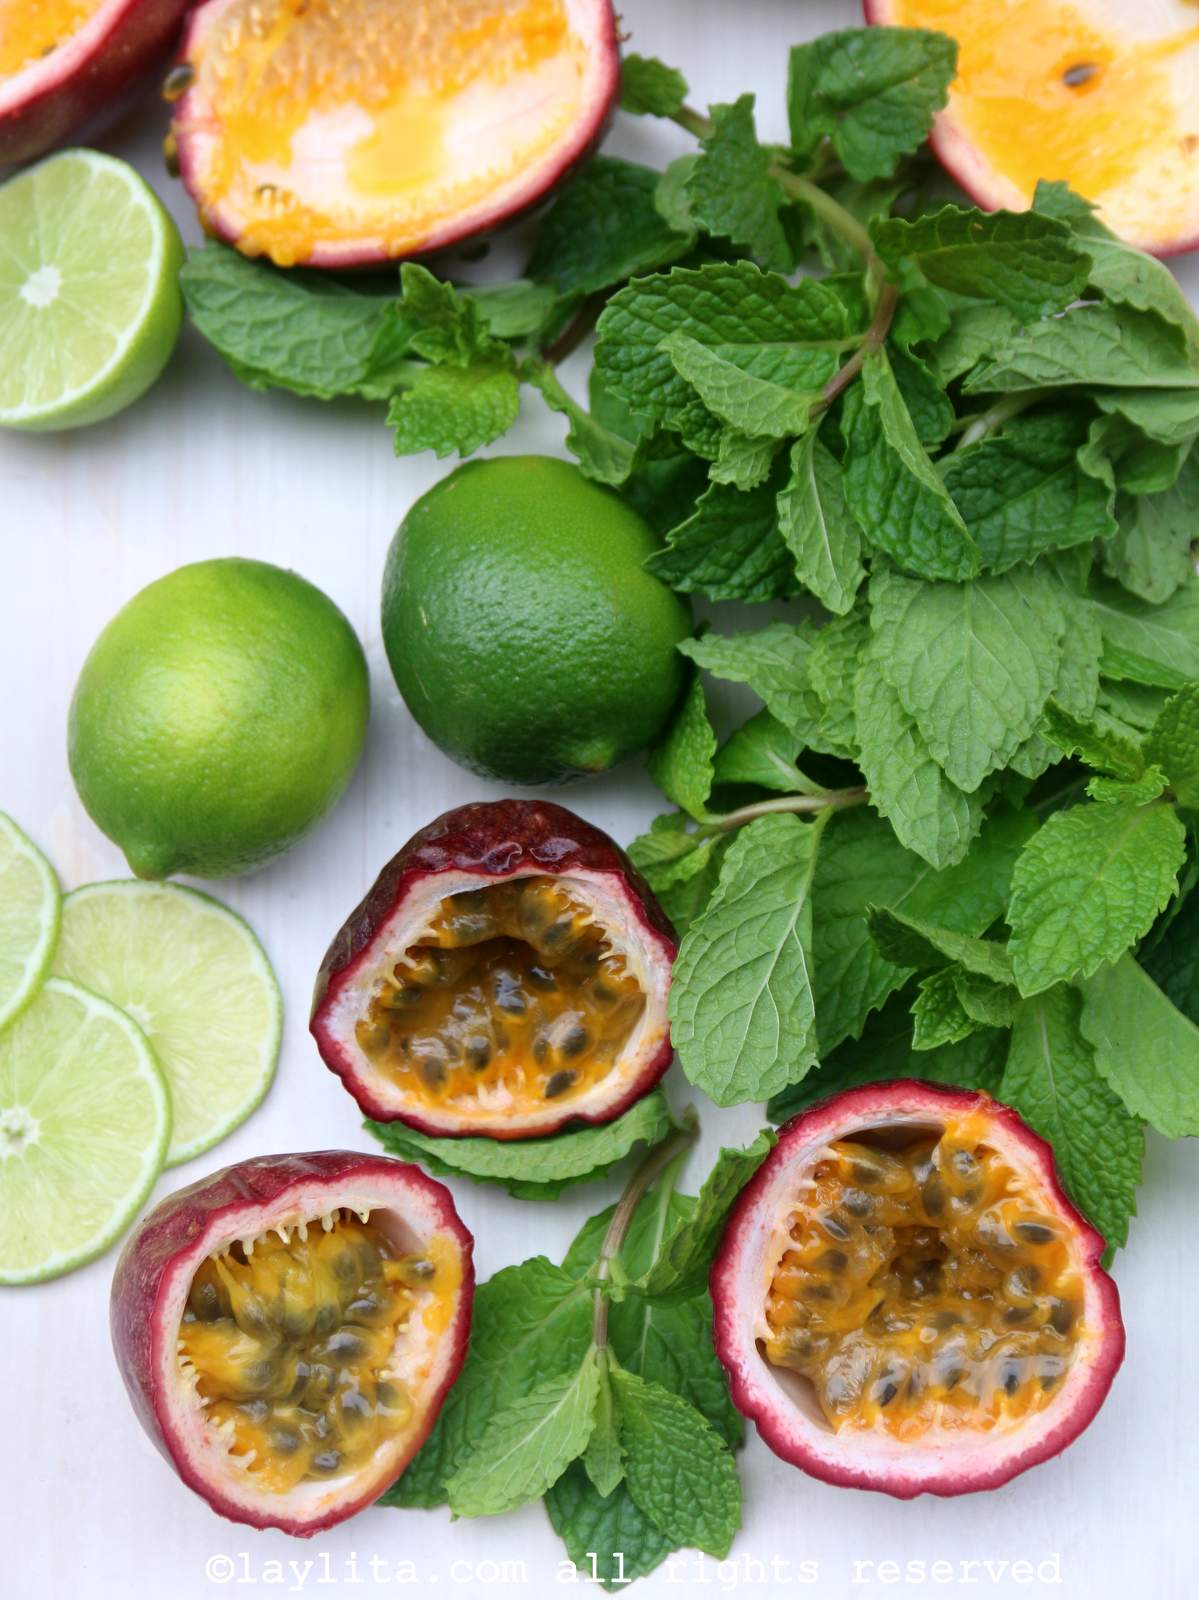 Fruits de la passion, citron vert et menthe